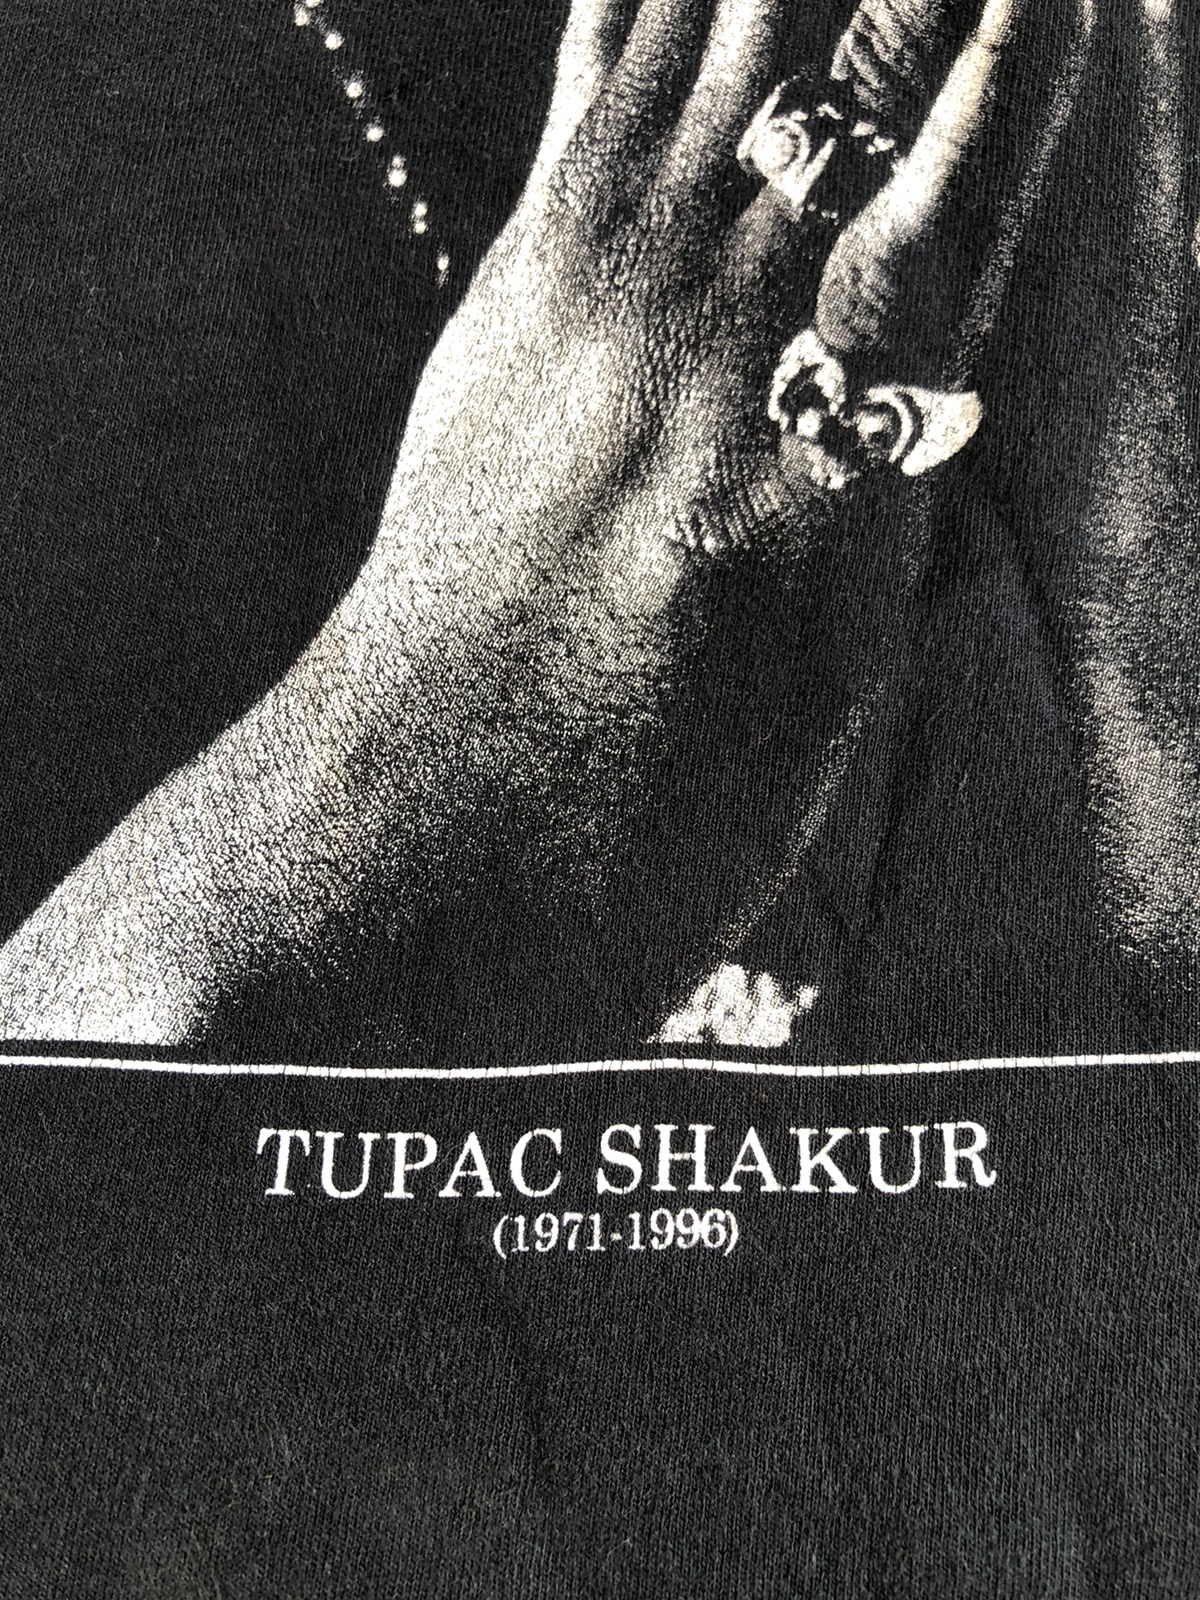 Bravado - Y2K TUPAC SHAKUR 2PAC MEMORIAL (1971-1996) TSHIRT RAP TEE - 3